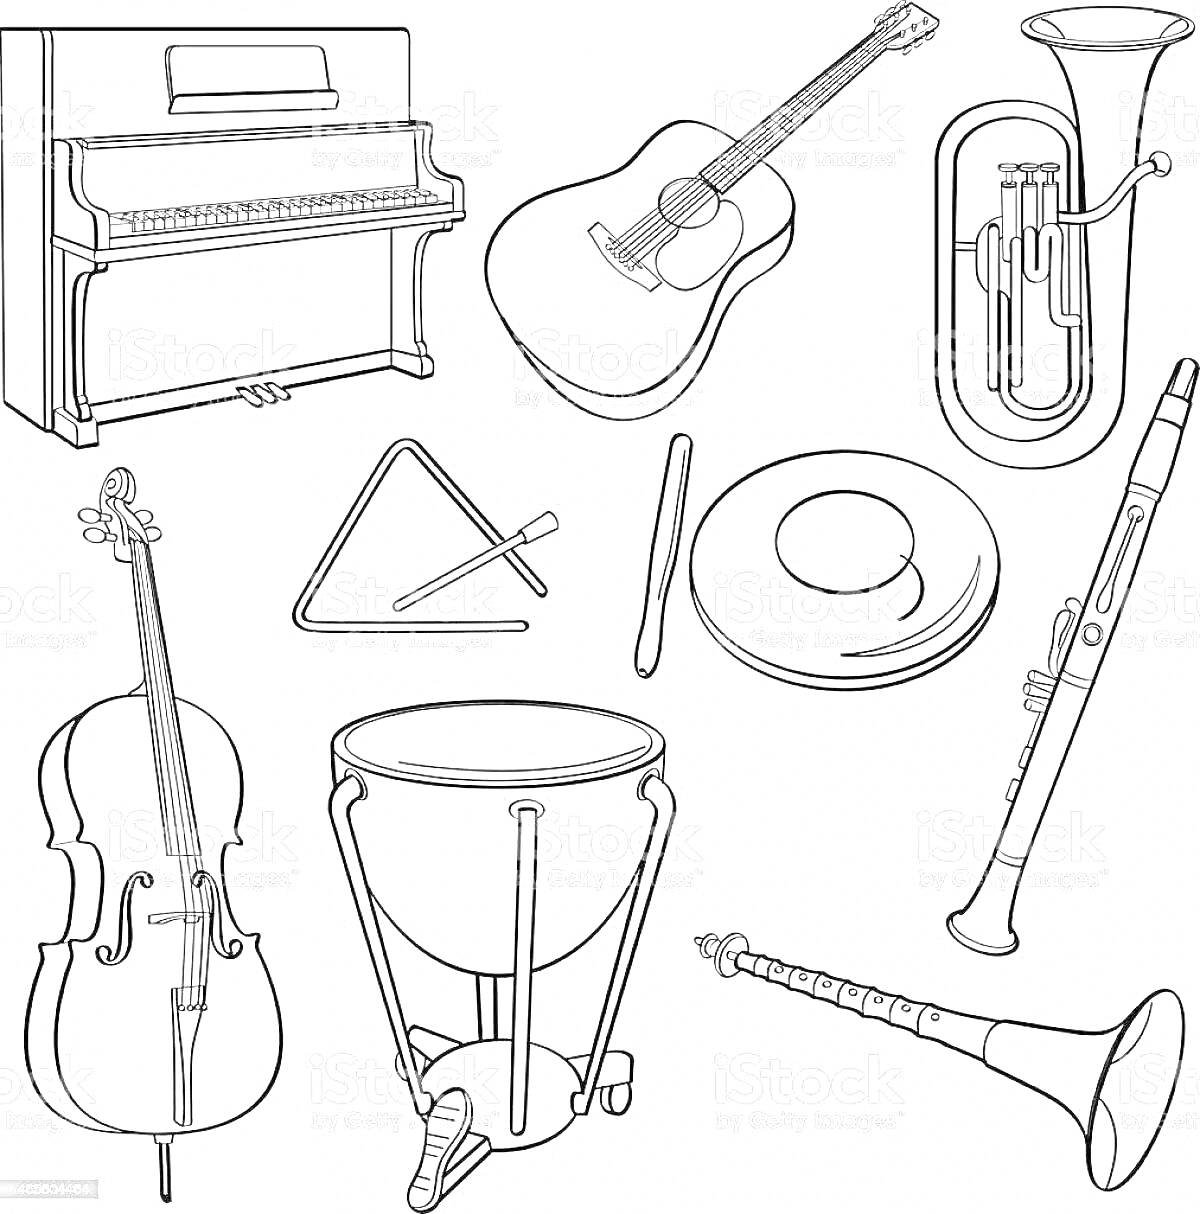 Раскраска Симфонический оркестр инструменты: пианино, гитара, туба, треугольник, барабан (литавры), тарелка, кларнет, виолончель, корнет